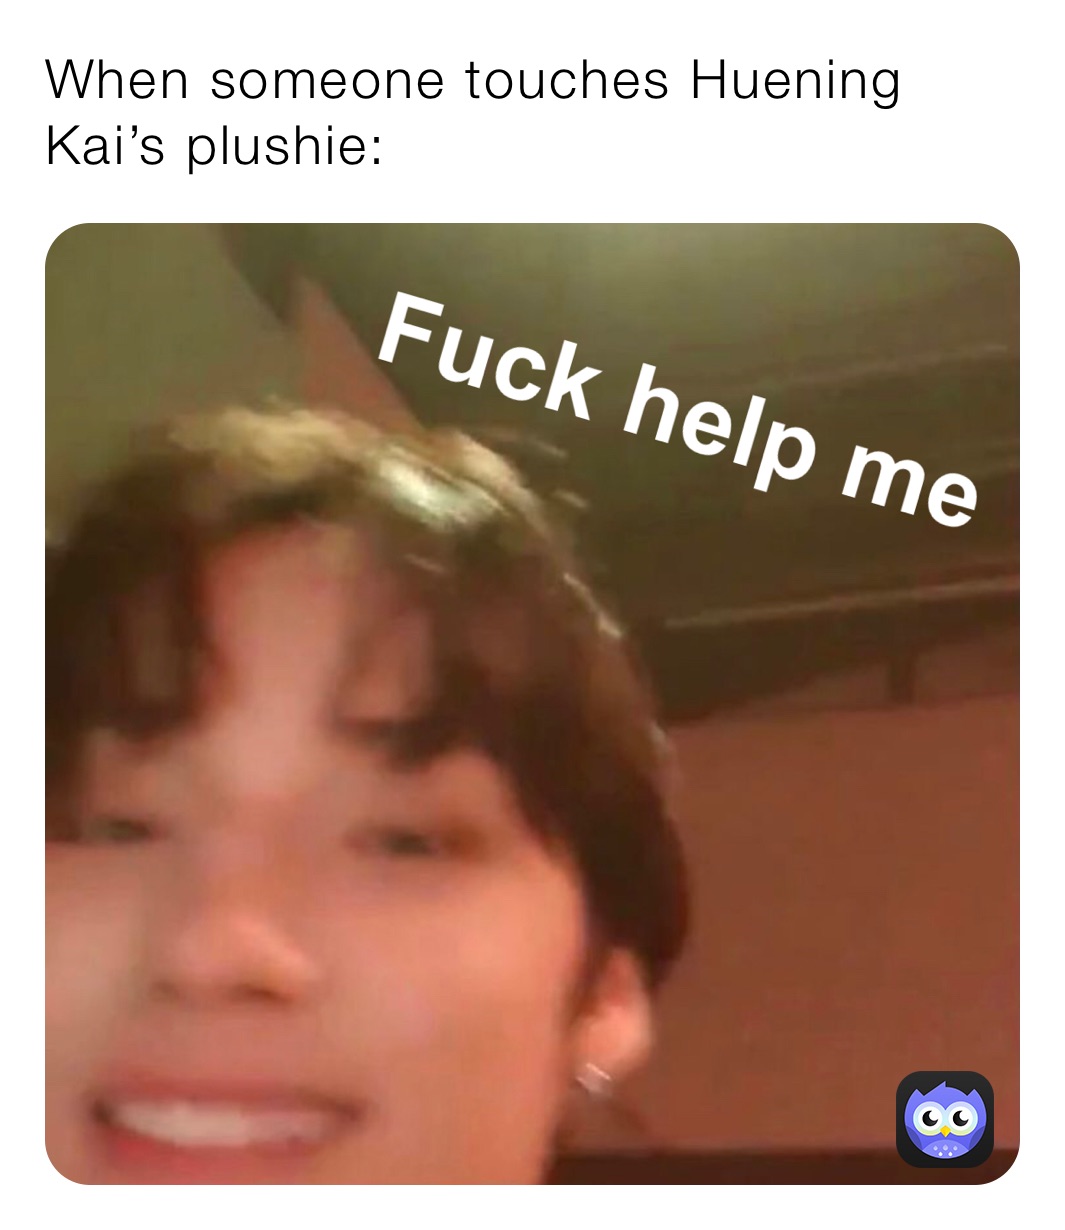 When someone touches Huening Kai’s plushie: